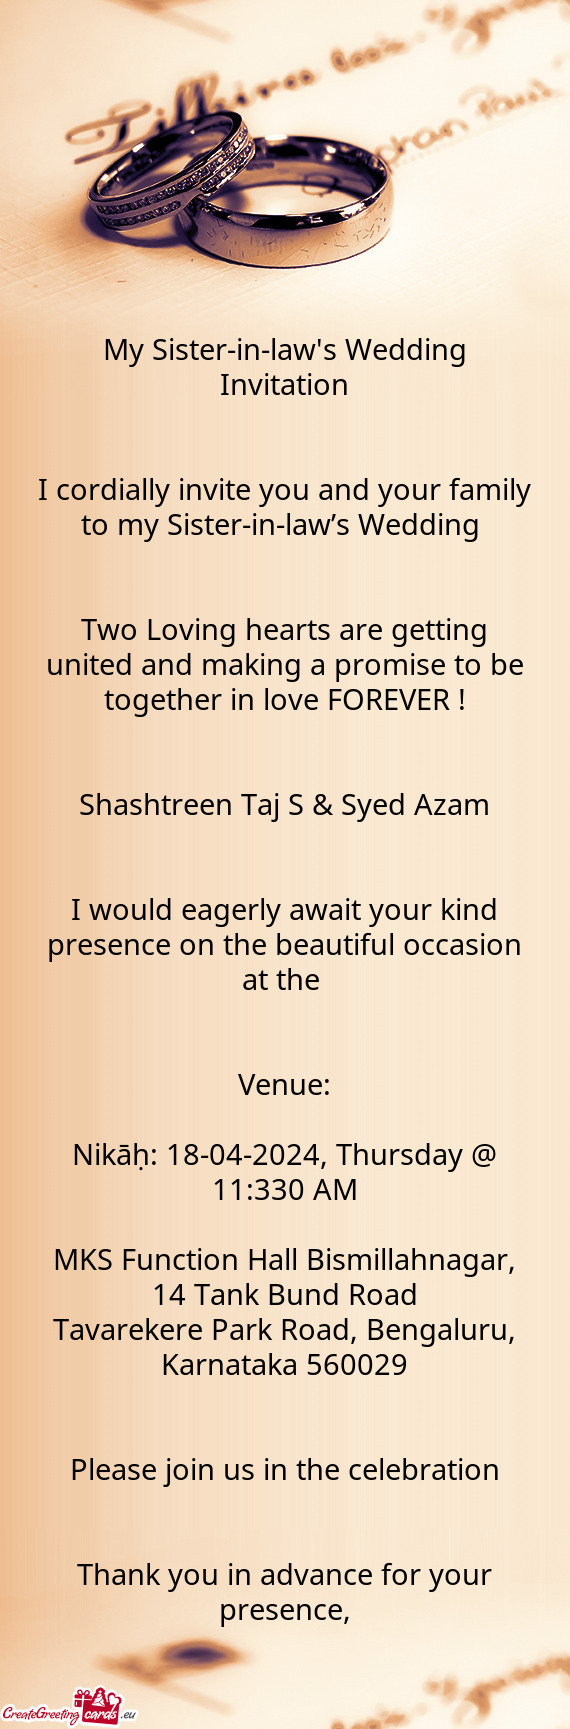 Shashtreen Taj S & Syed Azam